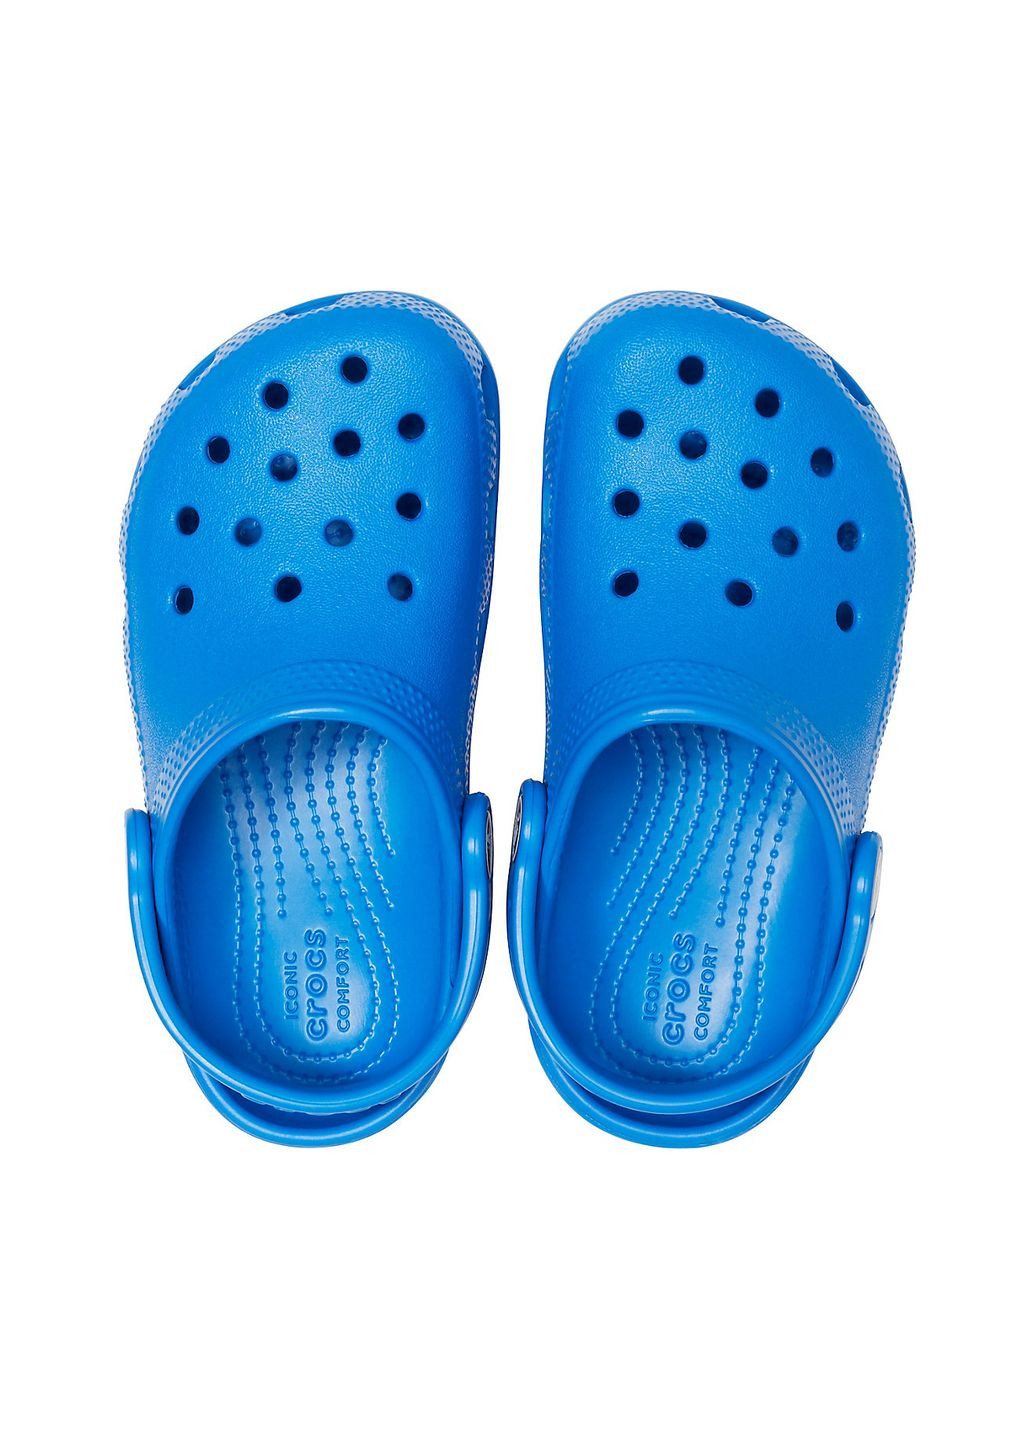 Синие сабо kids classic clog blue bolt c10\27\17.5 см 206991 Crocs